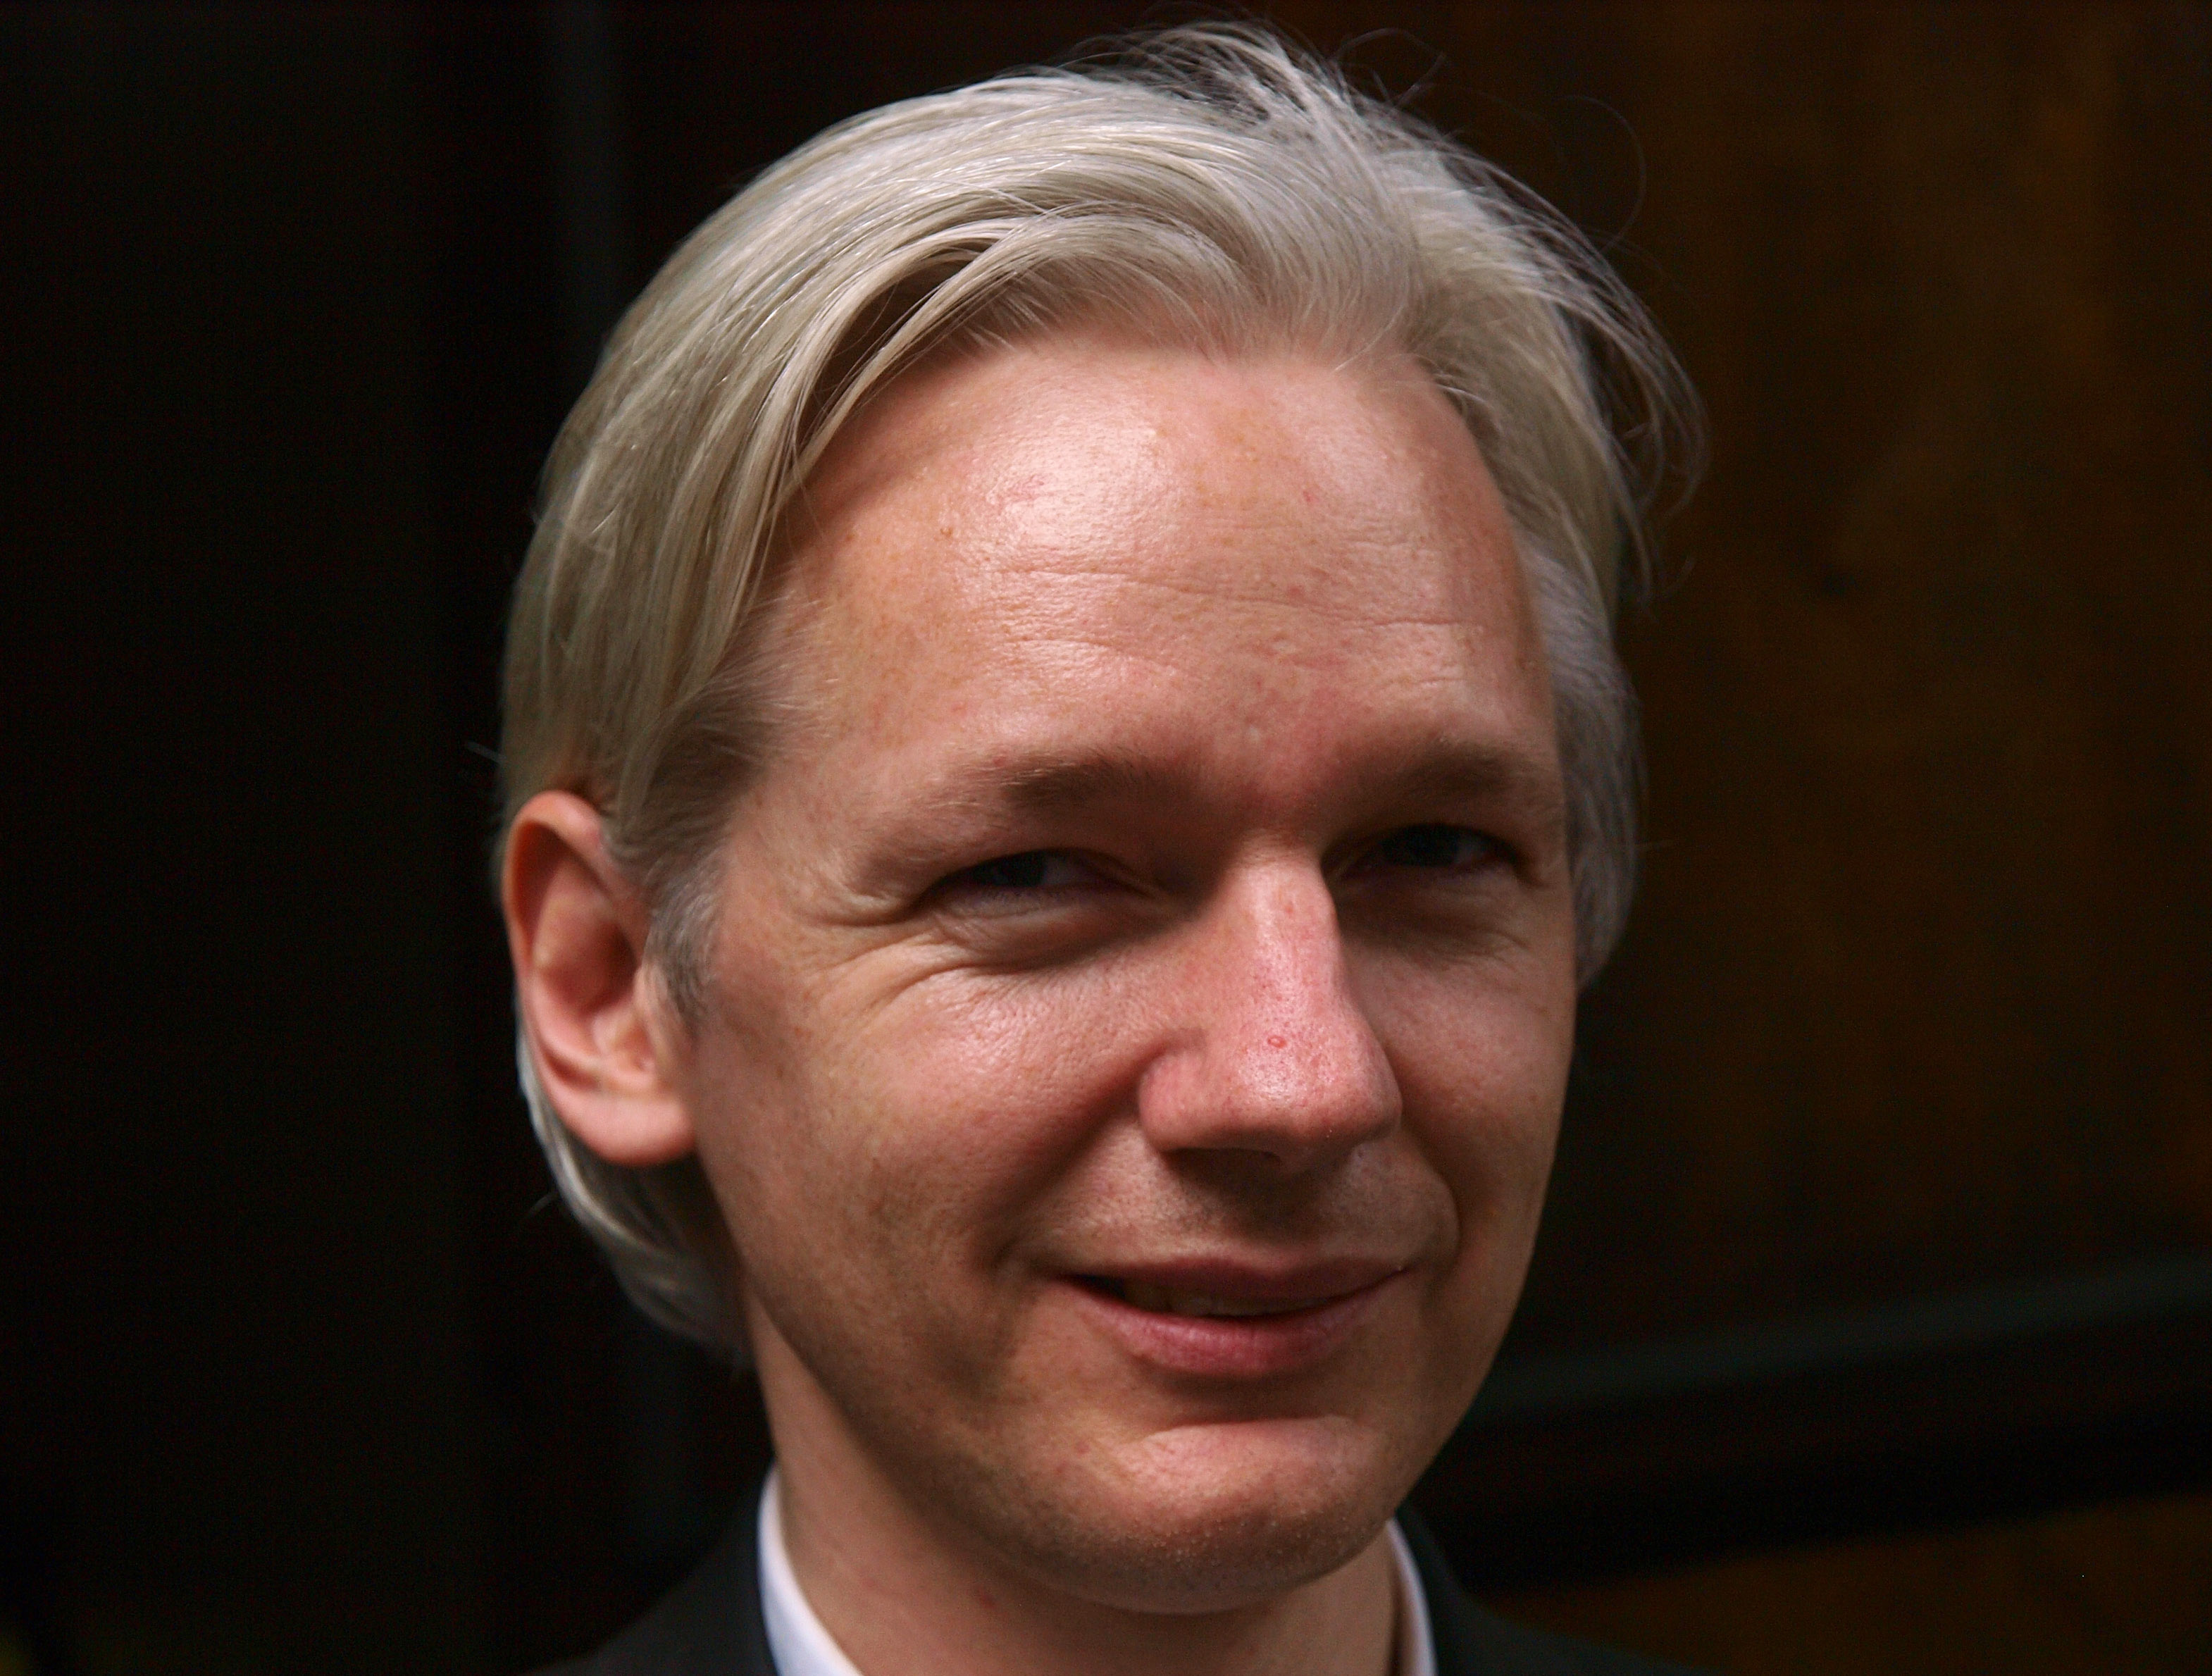 Julian Assange är mycket kritisk mot åklagaren och media efter våldtäktsanklagelserna.